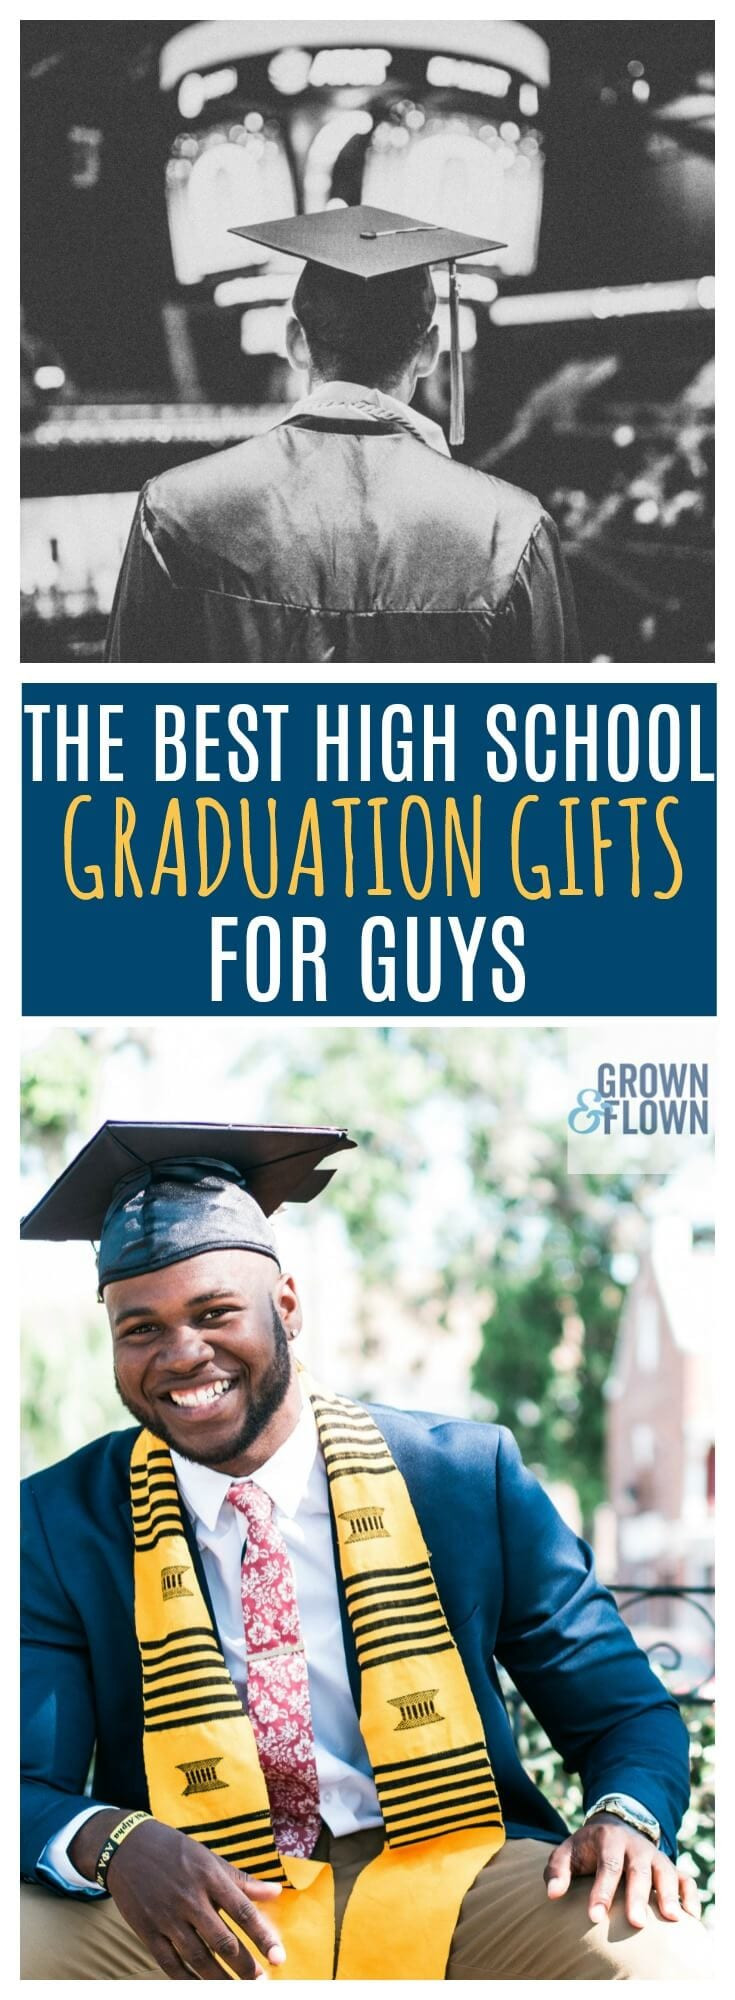 Gift Ideas For Boy High School Graduation
 2020 High School Graduation Gifts for Guys They Will Love